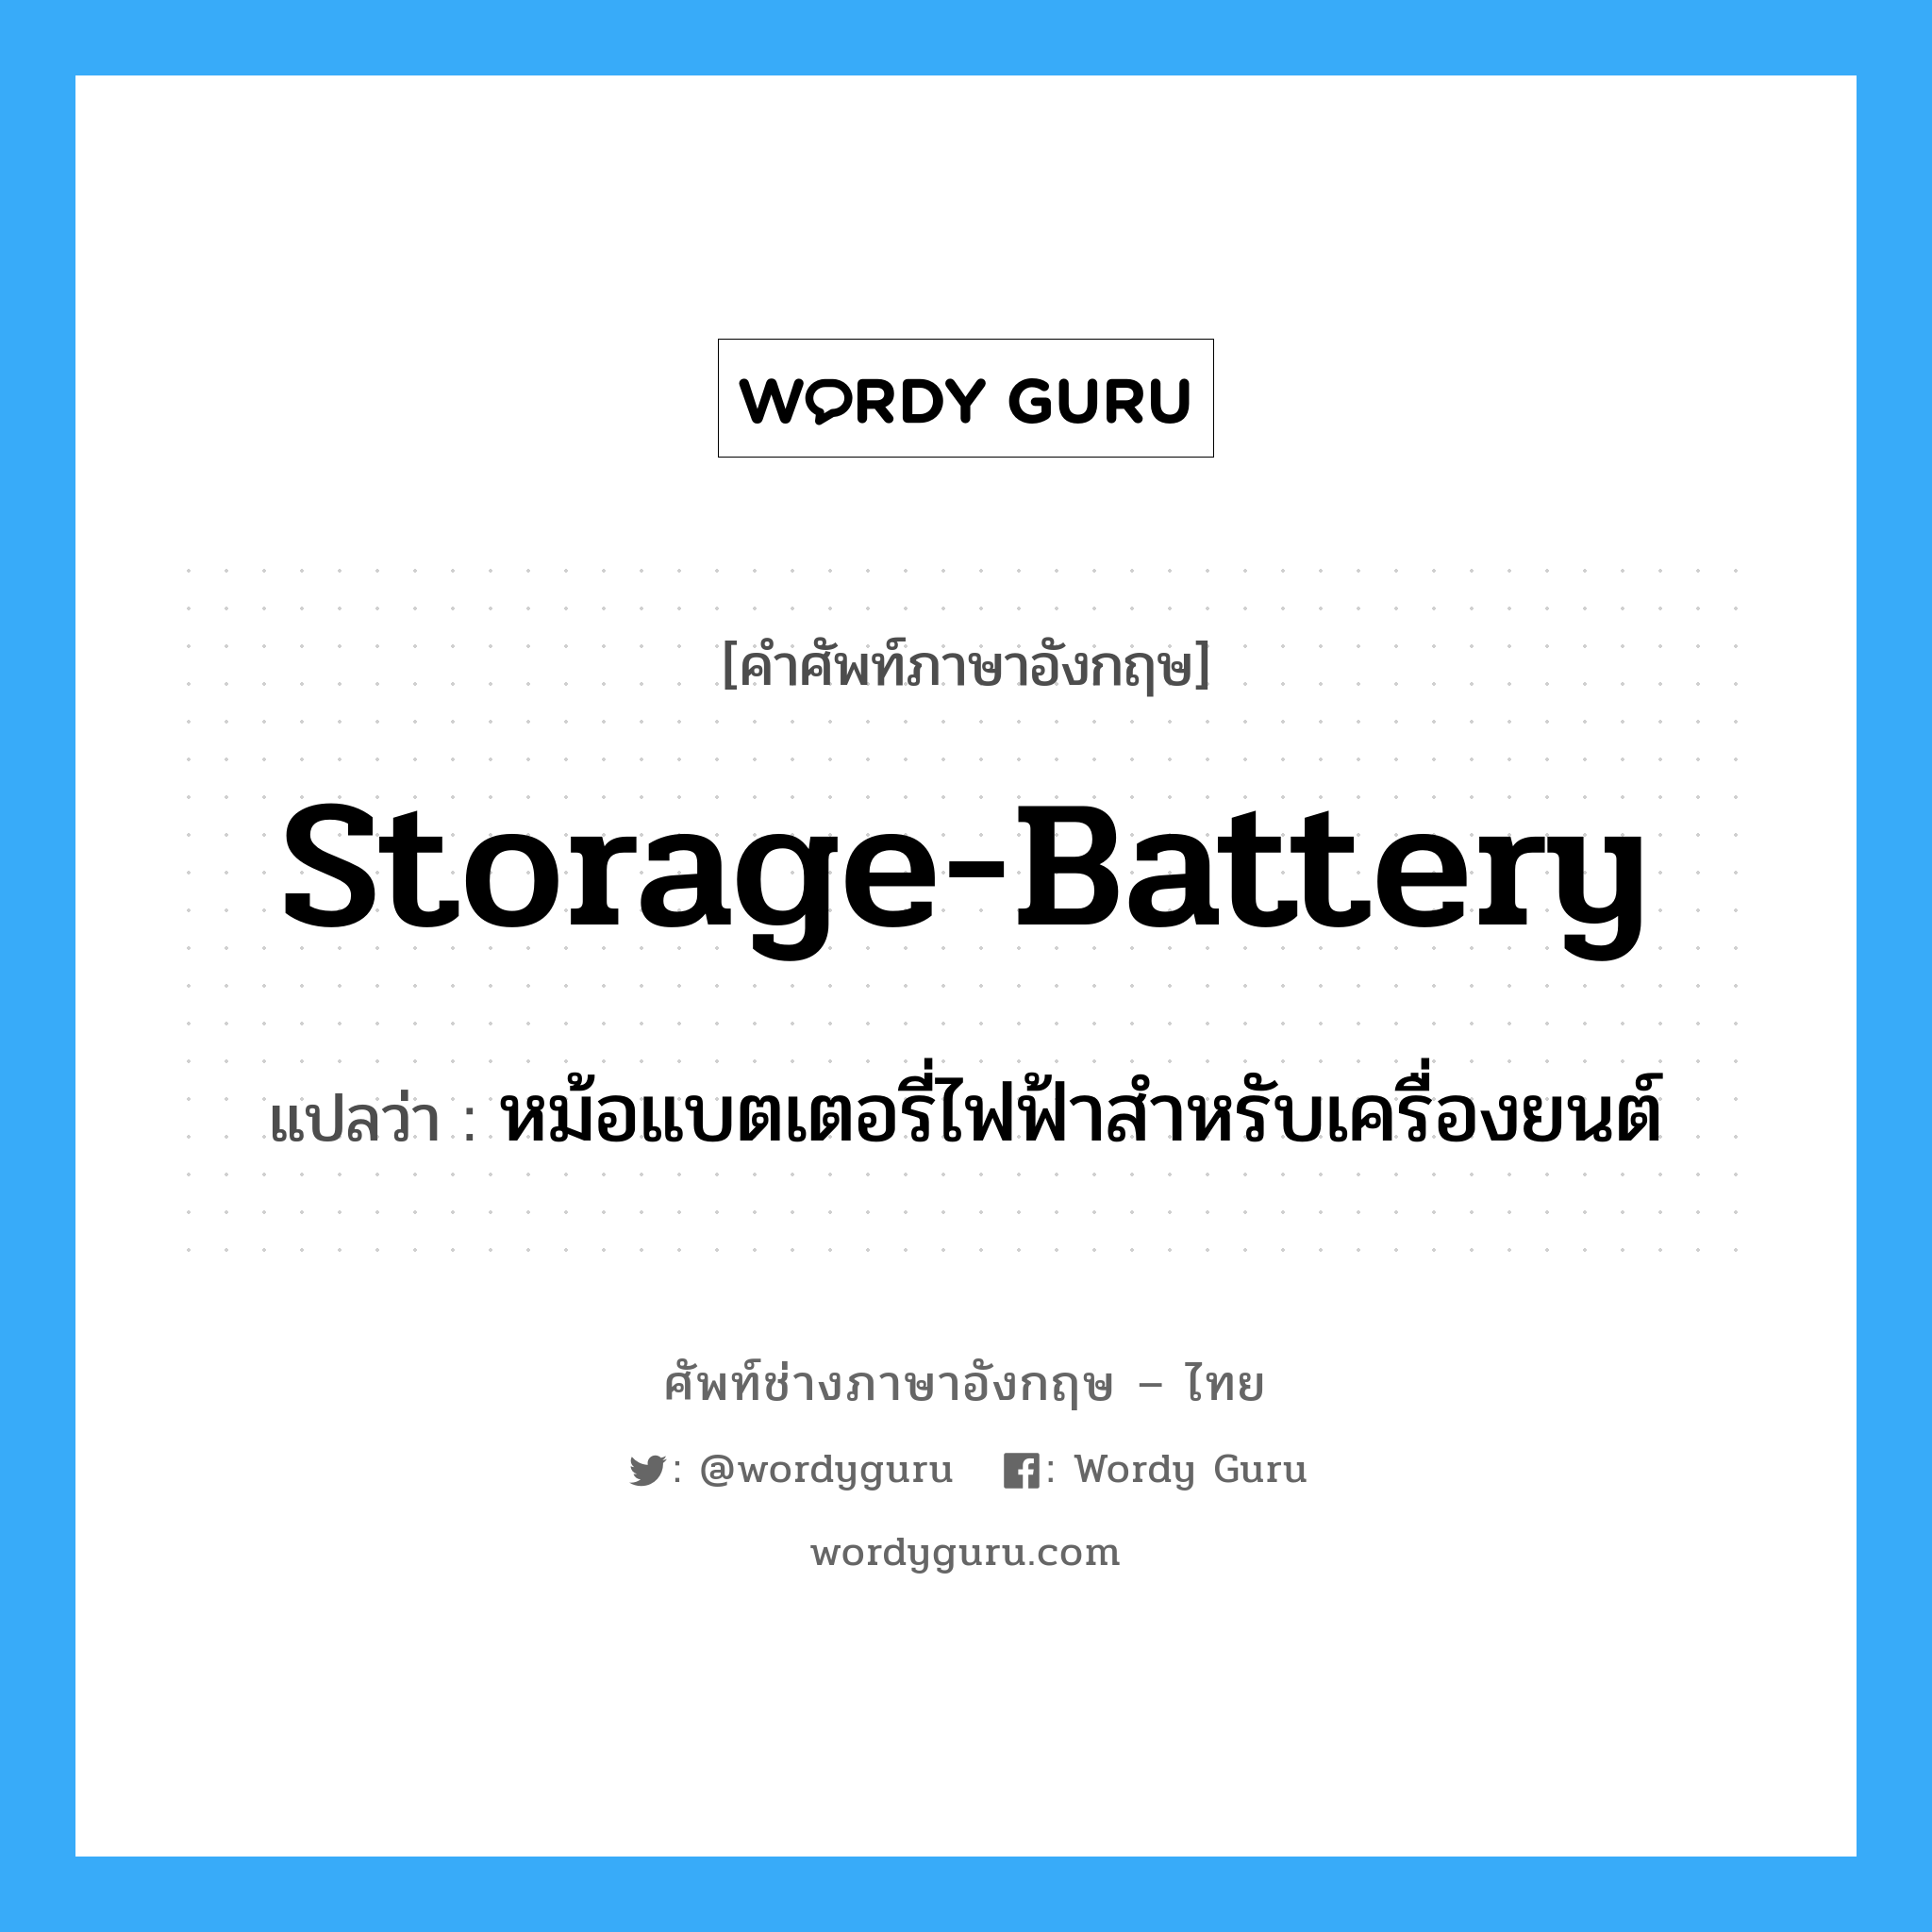 หม้อแบตเตอรี่ไฟฟ้าสำหรับเครื่องยนต์ ภาษาอังกฤษ?, คำศัพท์ช่างภาษาอังกฤษ - ไทย หม้อแบตเตอรี่ไฟฟ้าสำหรับเครื่องยนต์ คำศัพท์ภาษาอังกฤษ หม้อแบตเตอรี่ไฟฟ้าสำหรับเครื่องยนต์ แปลว่า storage-battery